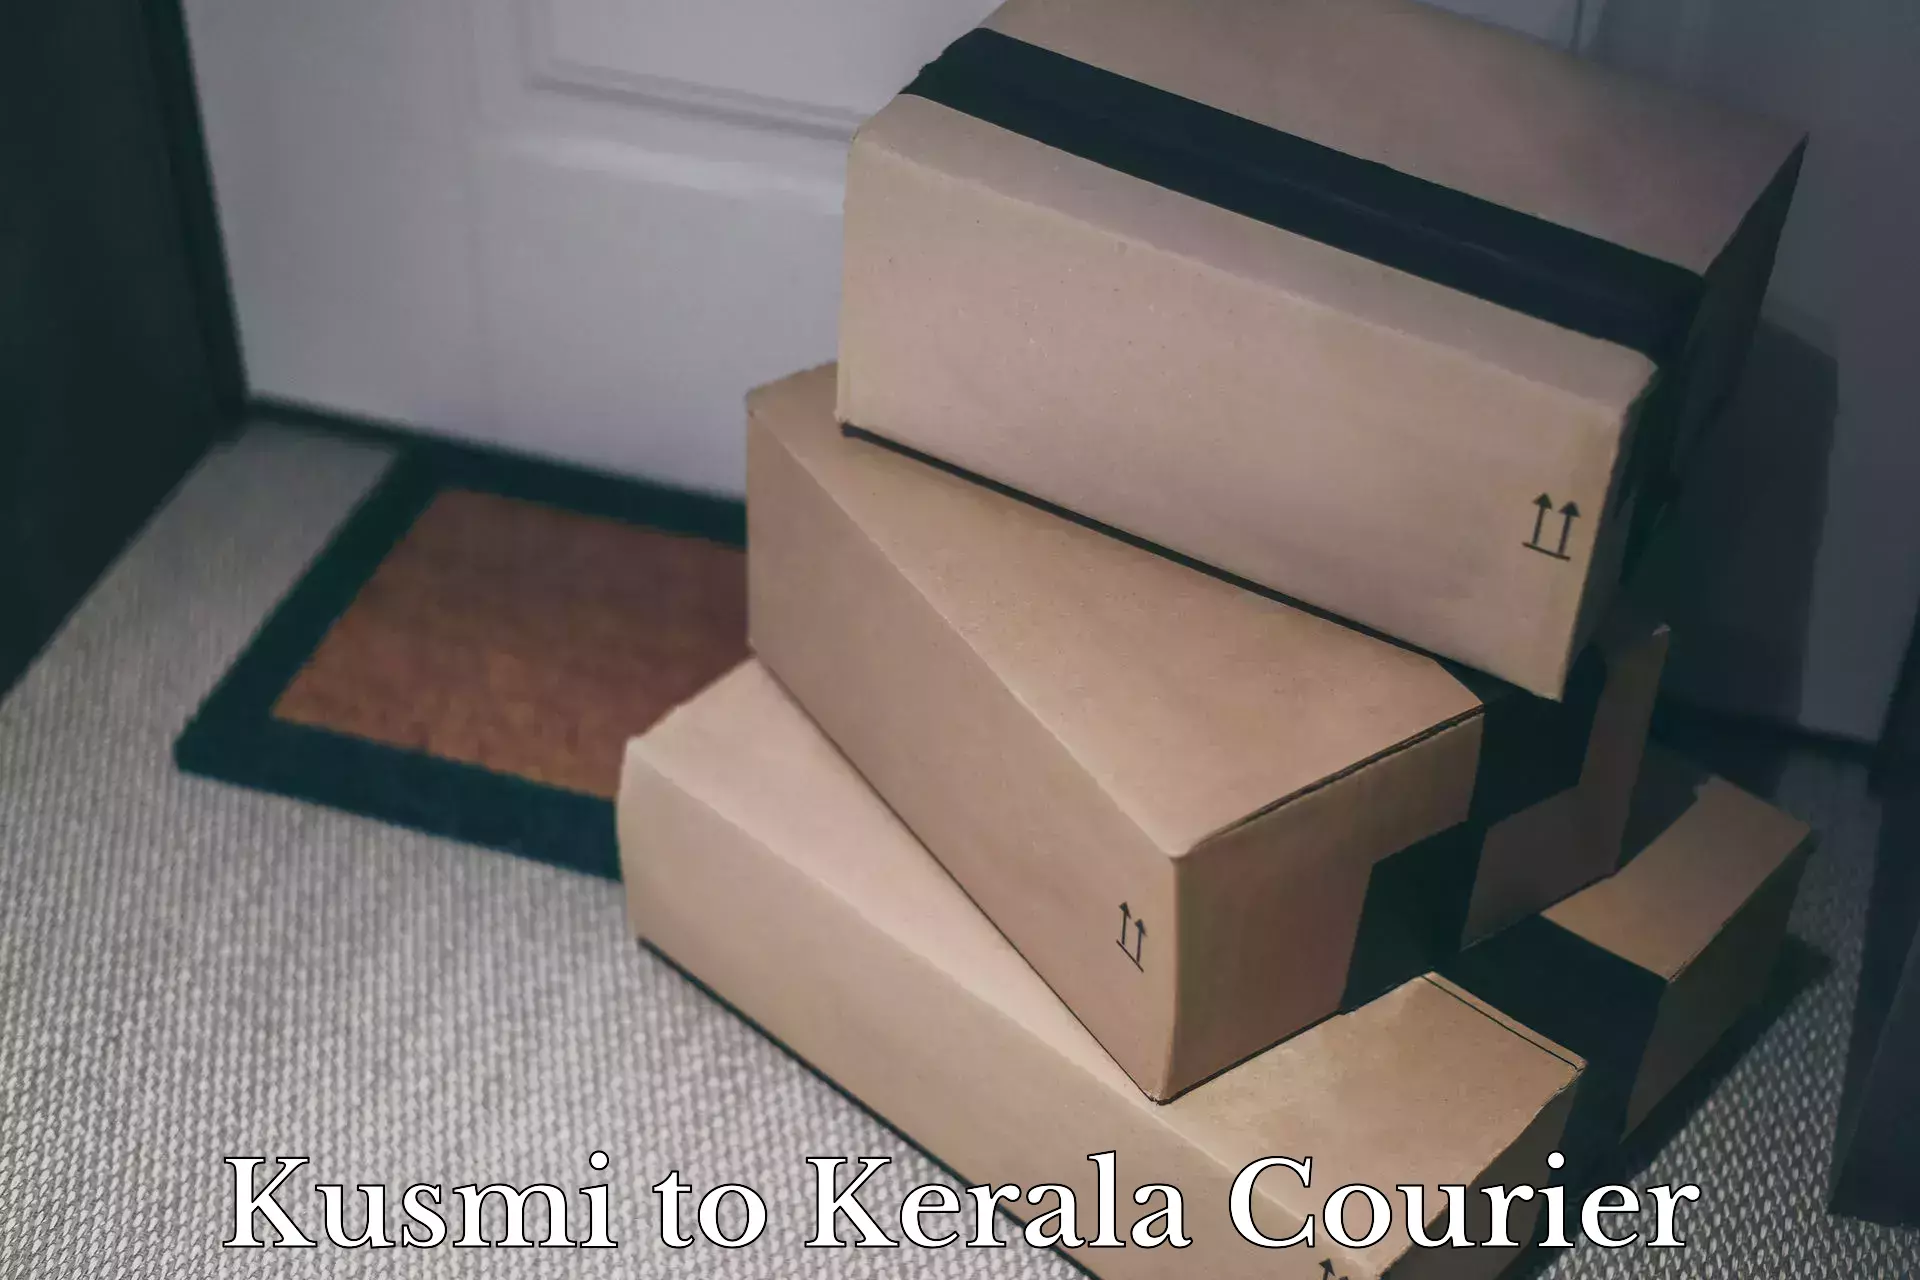 Efficient moving company Kusmi to Kerala